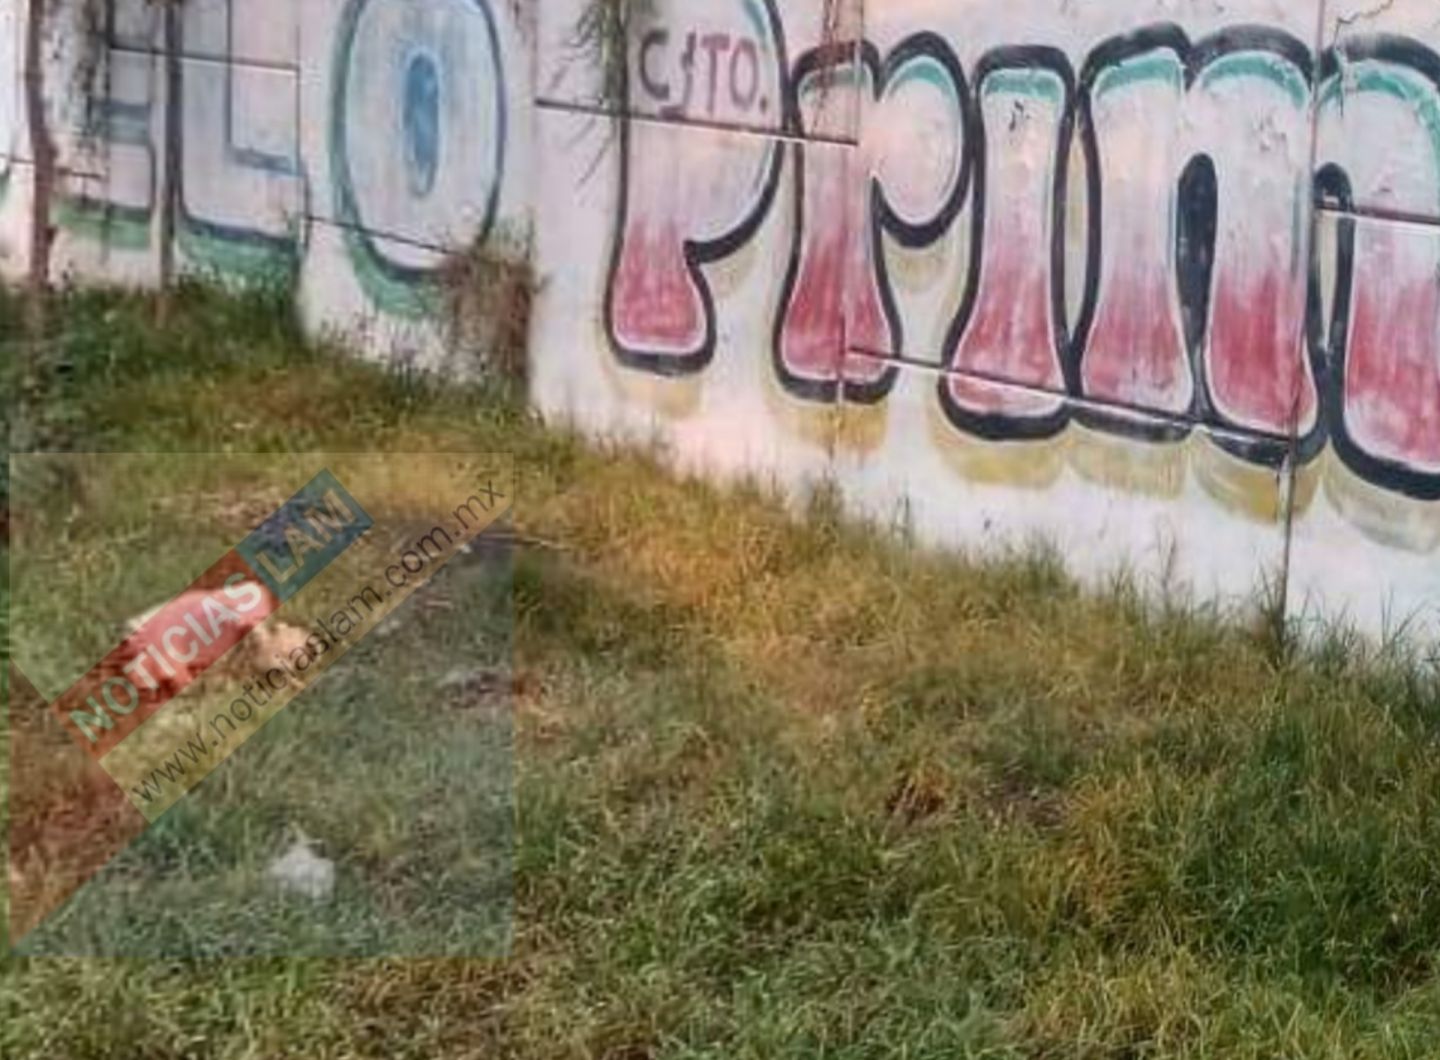 Localizan los restos de una mujer tirados en un terreno de comunidad de Texcoco